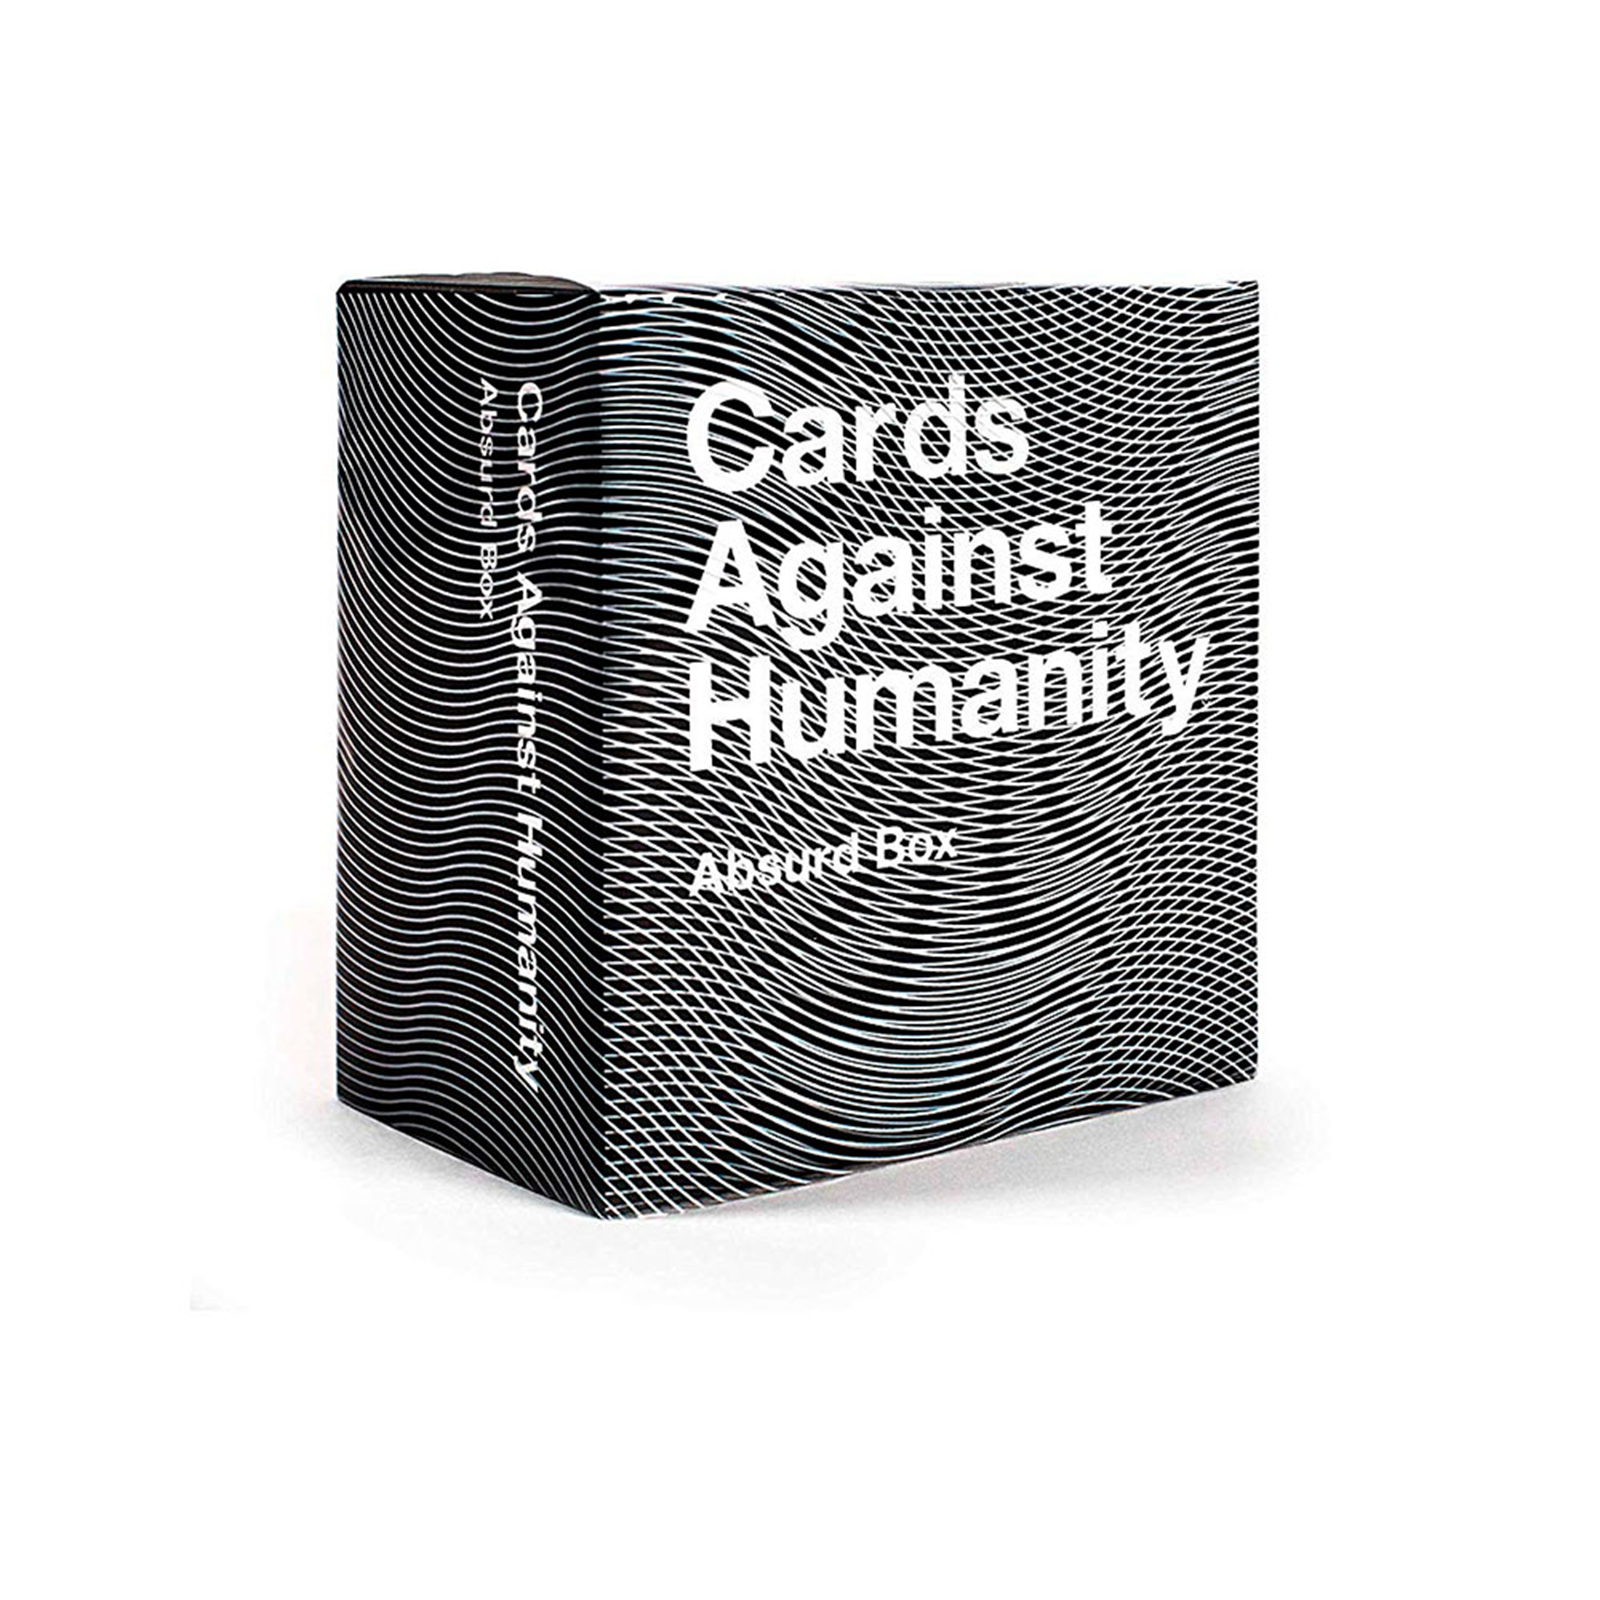 Billede af Cards Against Humanity - Absurd Box